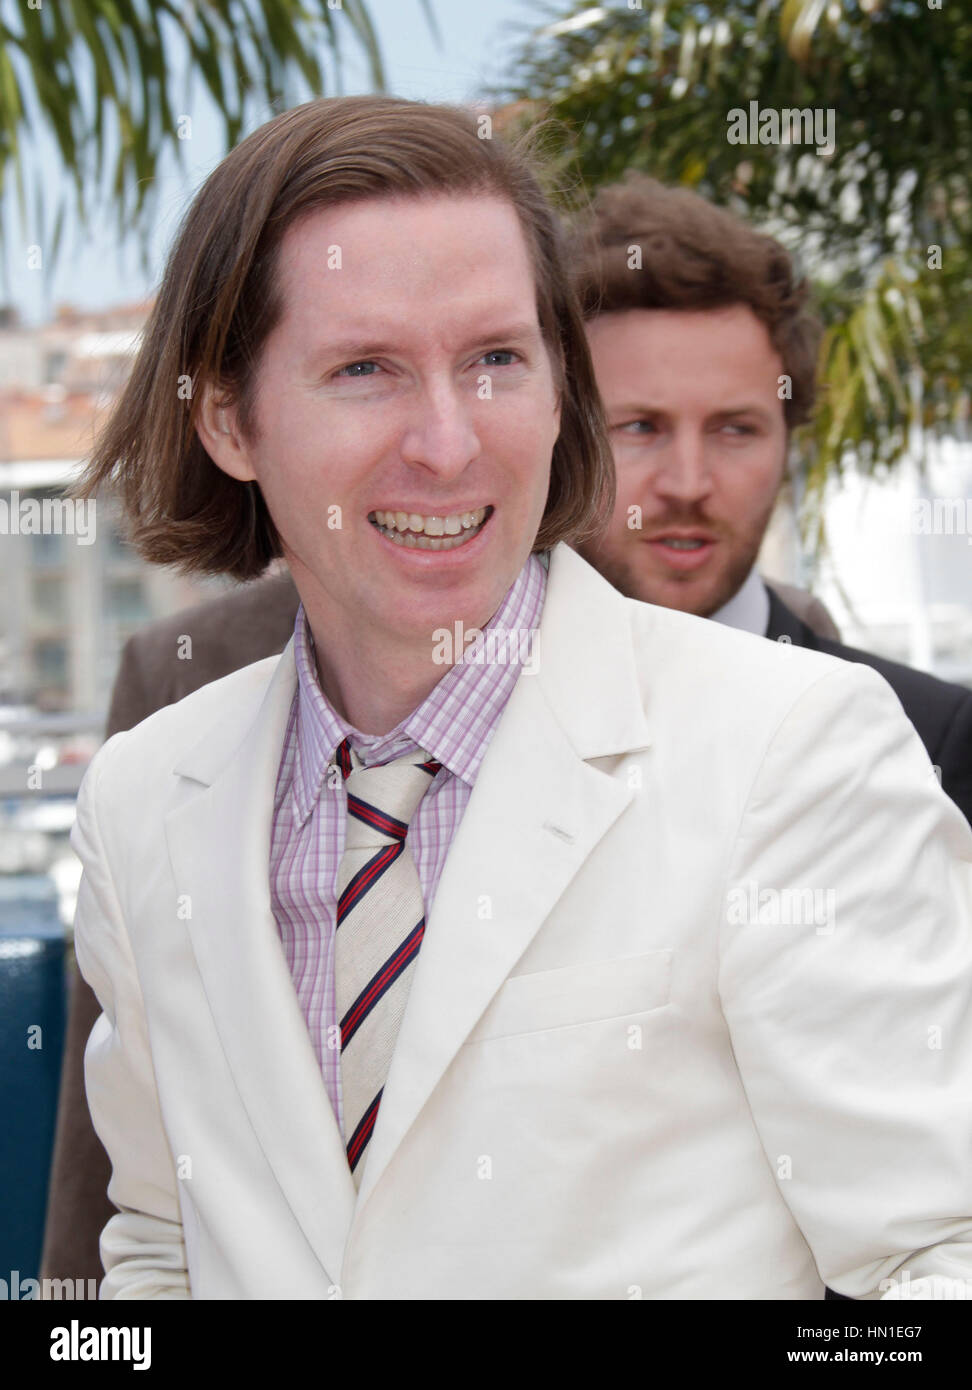 Direttore di Wes Anderson arriva a la foto chiamata per il film, 'Moonrise unito" durante il sessantacinquesimo Cannes Film Festival di Cannes, Francia il 16 maggio 2012. Foto di Francesco Specker Foto Stock